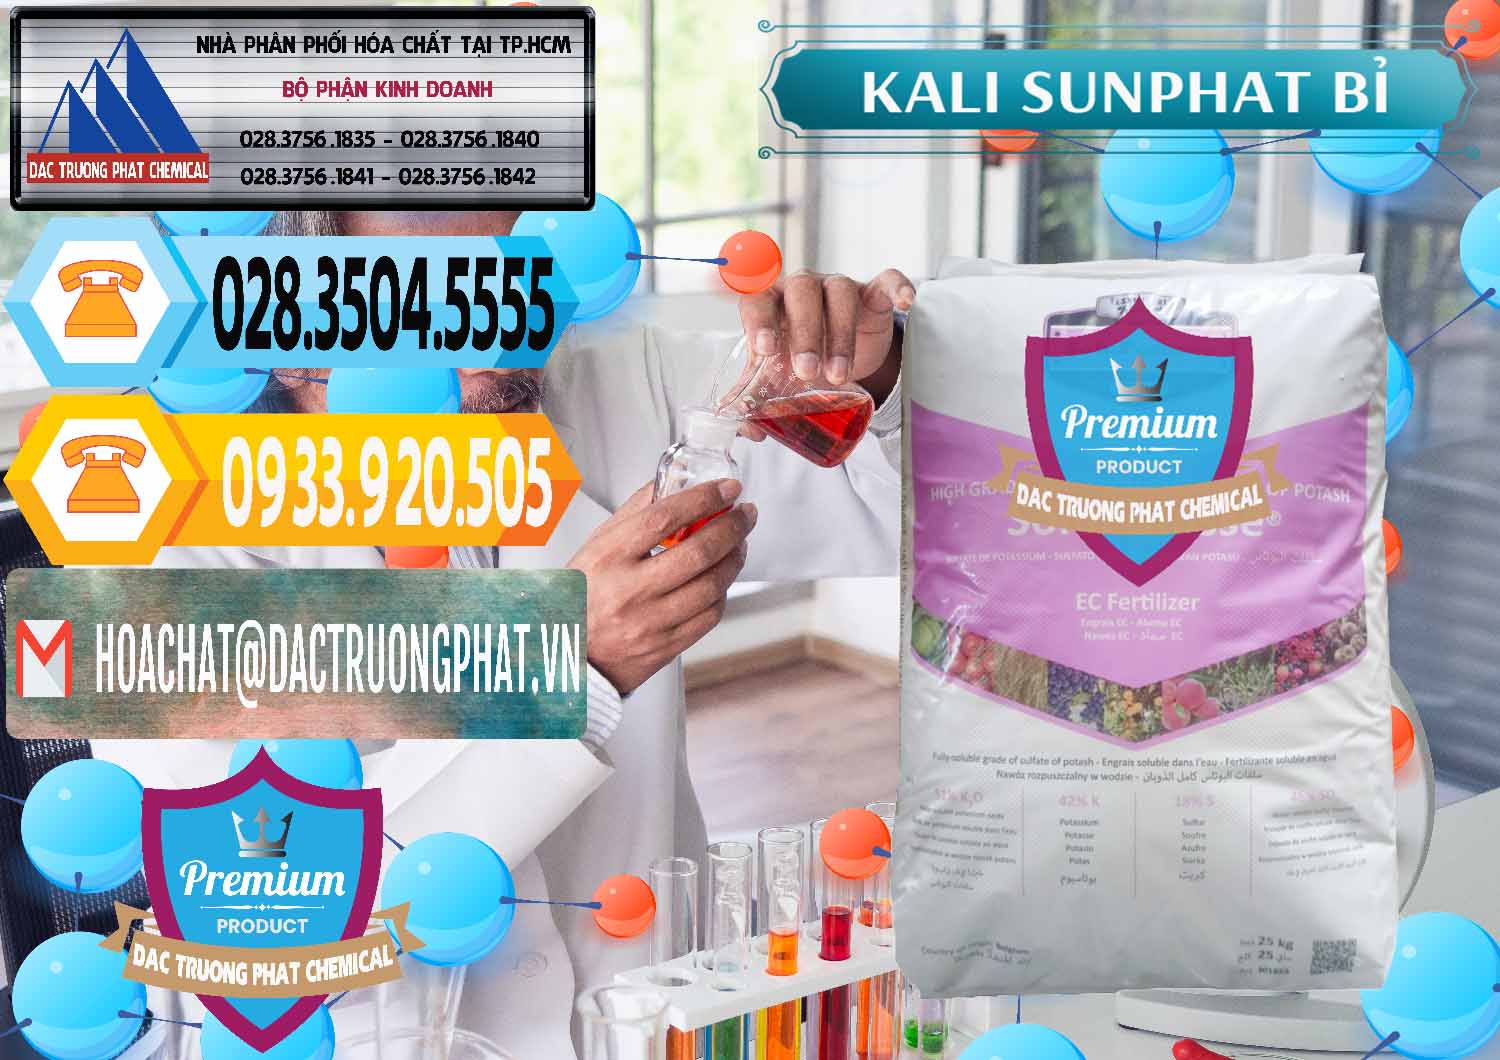 Chuyên kinh doanh - bán Kali Sunphat – K2SO4 Bỉ Belgium - 0406 - Chuyên phân phối ( kinh doanh ) hóa chất tại TP.HCM - hoachattayrua.net